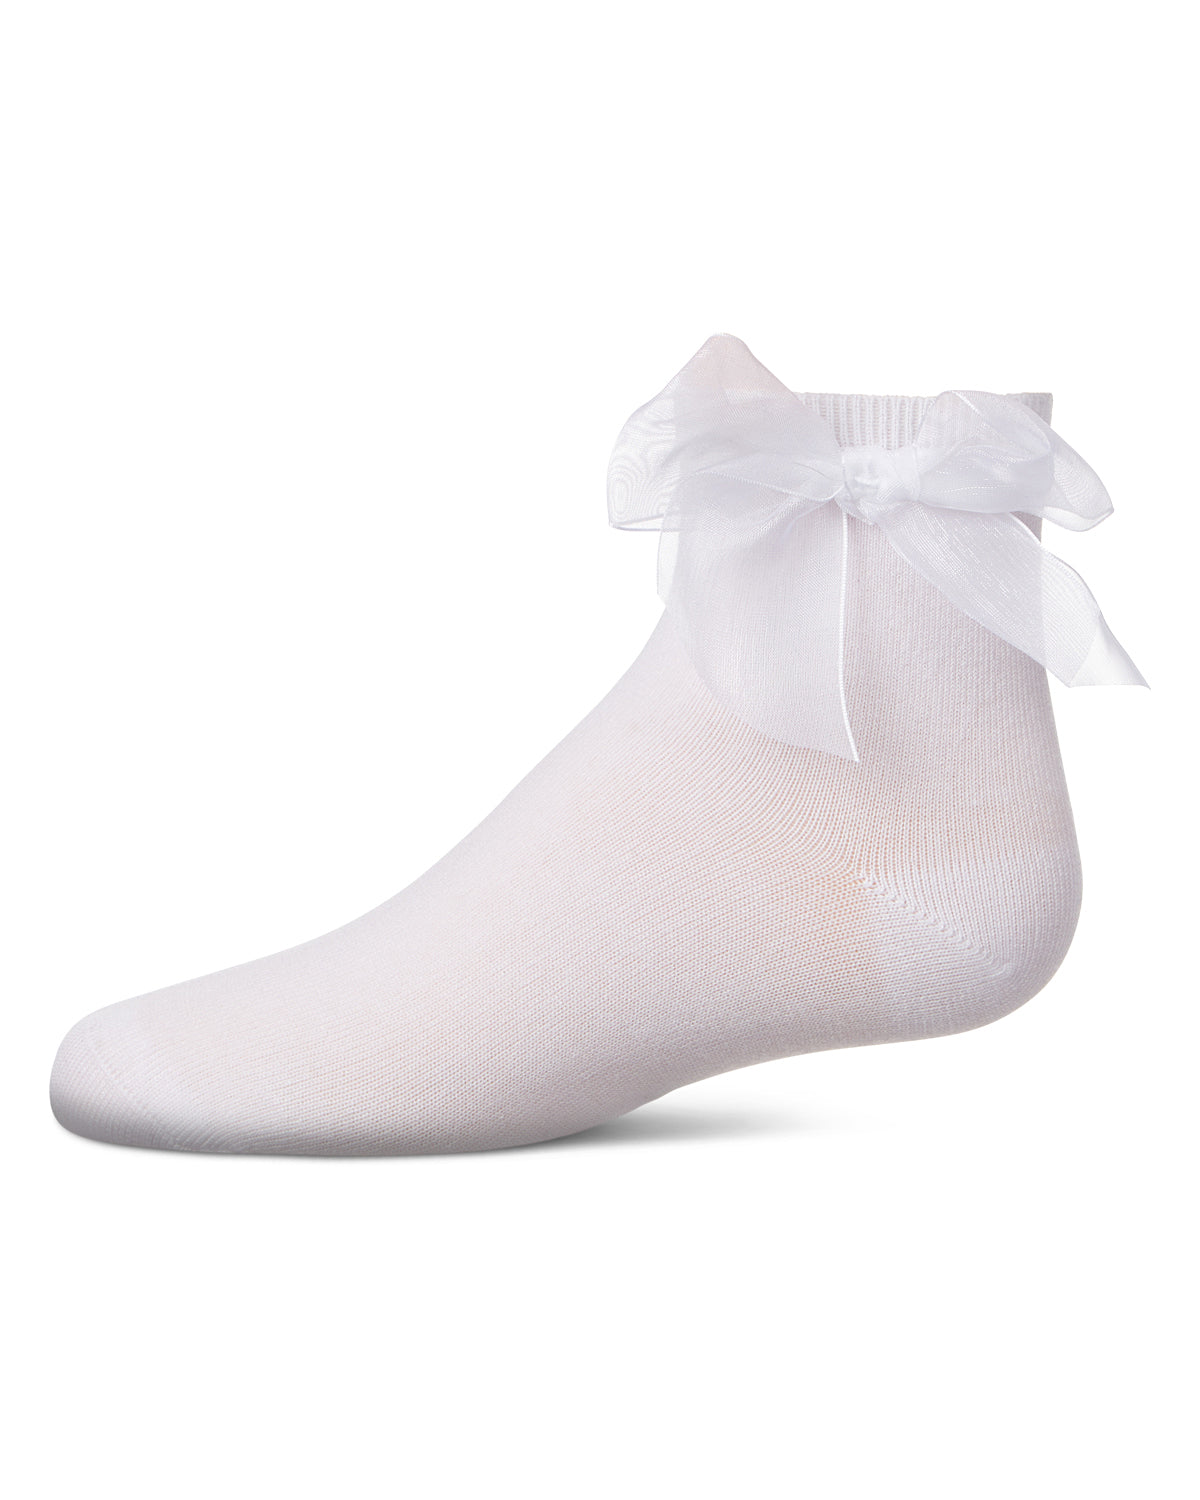 Girls' Tulle Bow Anklet Socks